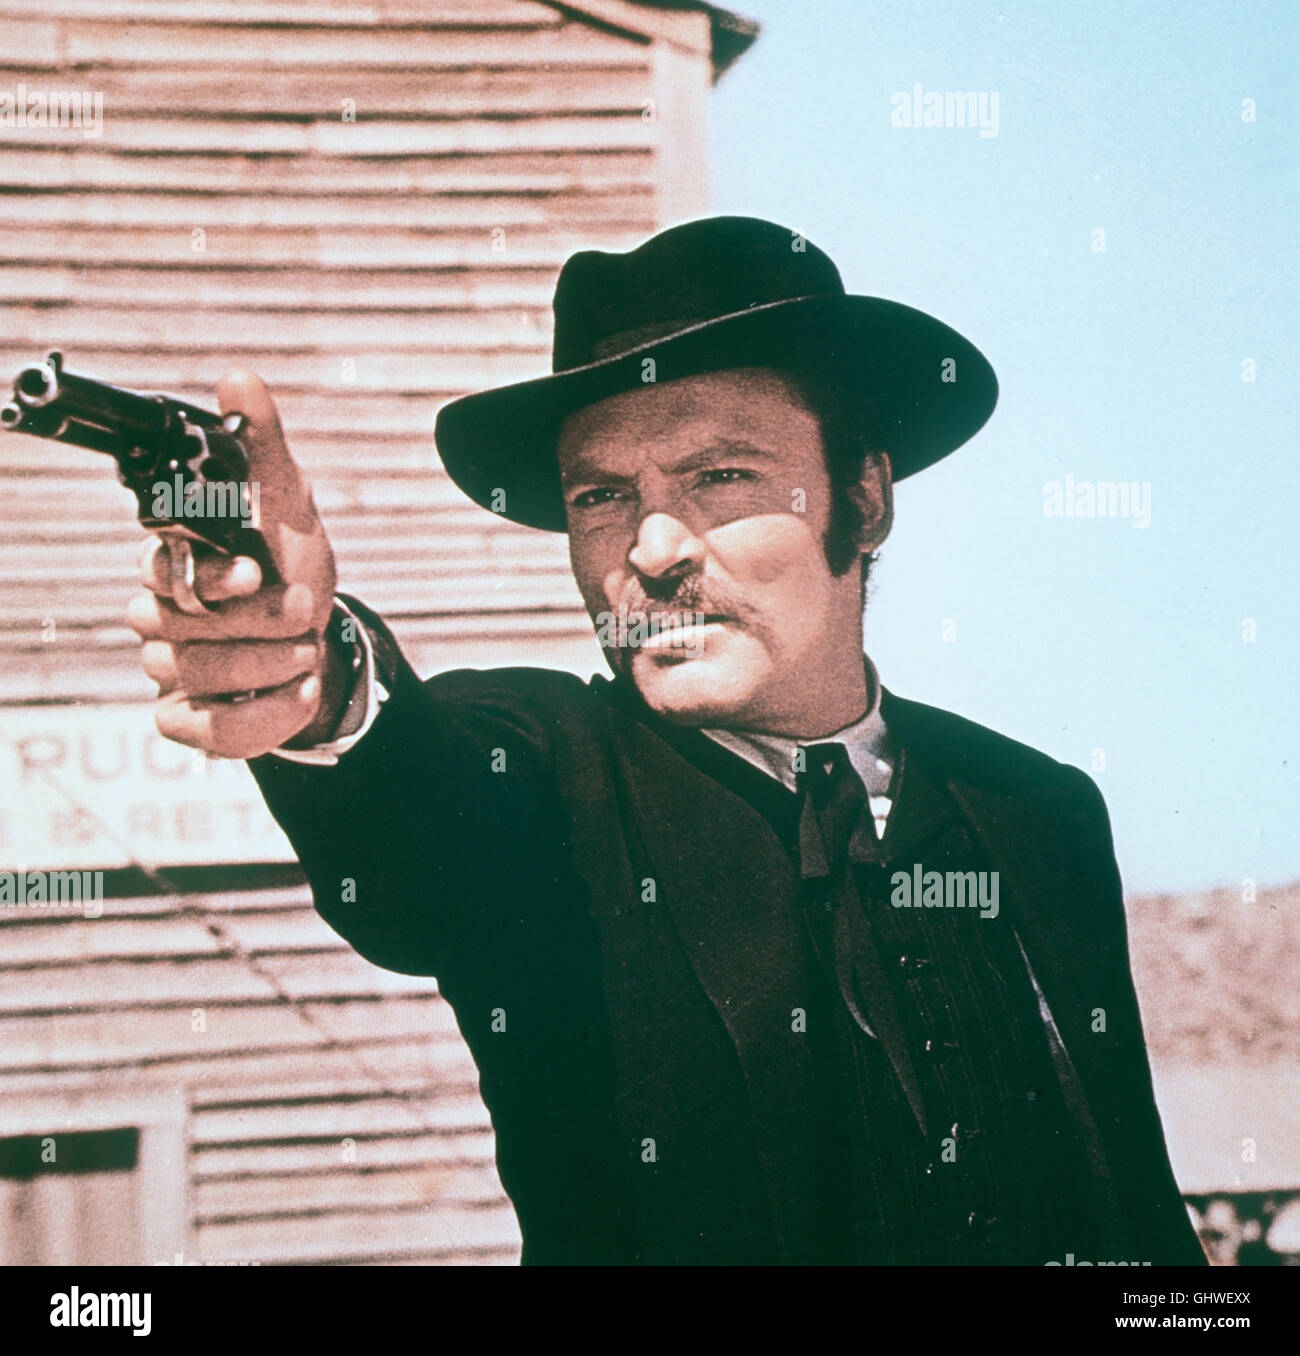 DOC- Der Revolverheld Doc Holliday (STACY KEACH) besucht seinen alten Freund Wyatt Earp, der sich in Tombstone zum Sheriff wählen lassen will. Dazu muß Wyatt die Clanton-Brüder aus dem Weg räu-men und bittet Doc um Hilfe. Regie: Frank Perry aka. Doc Stock Photo